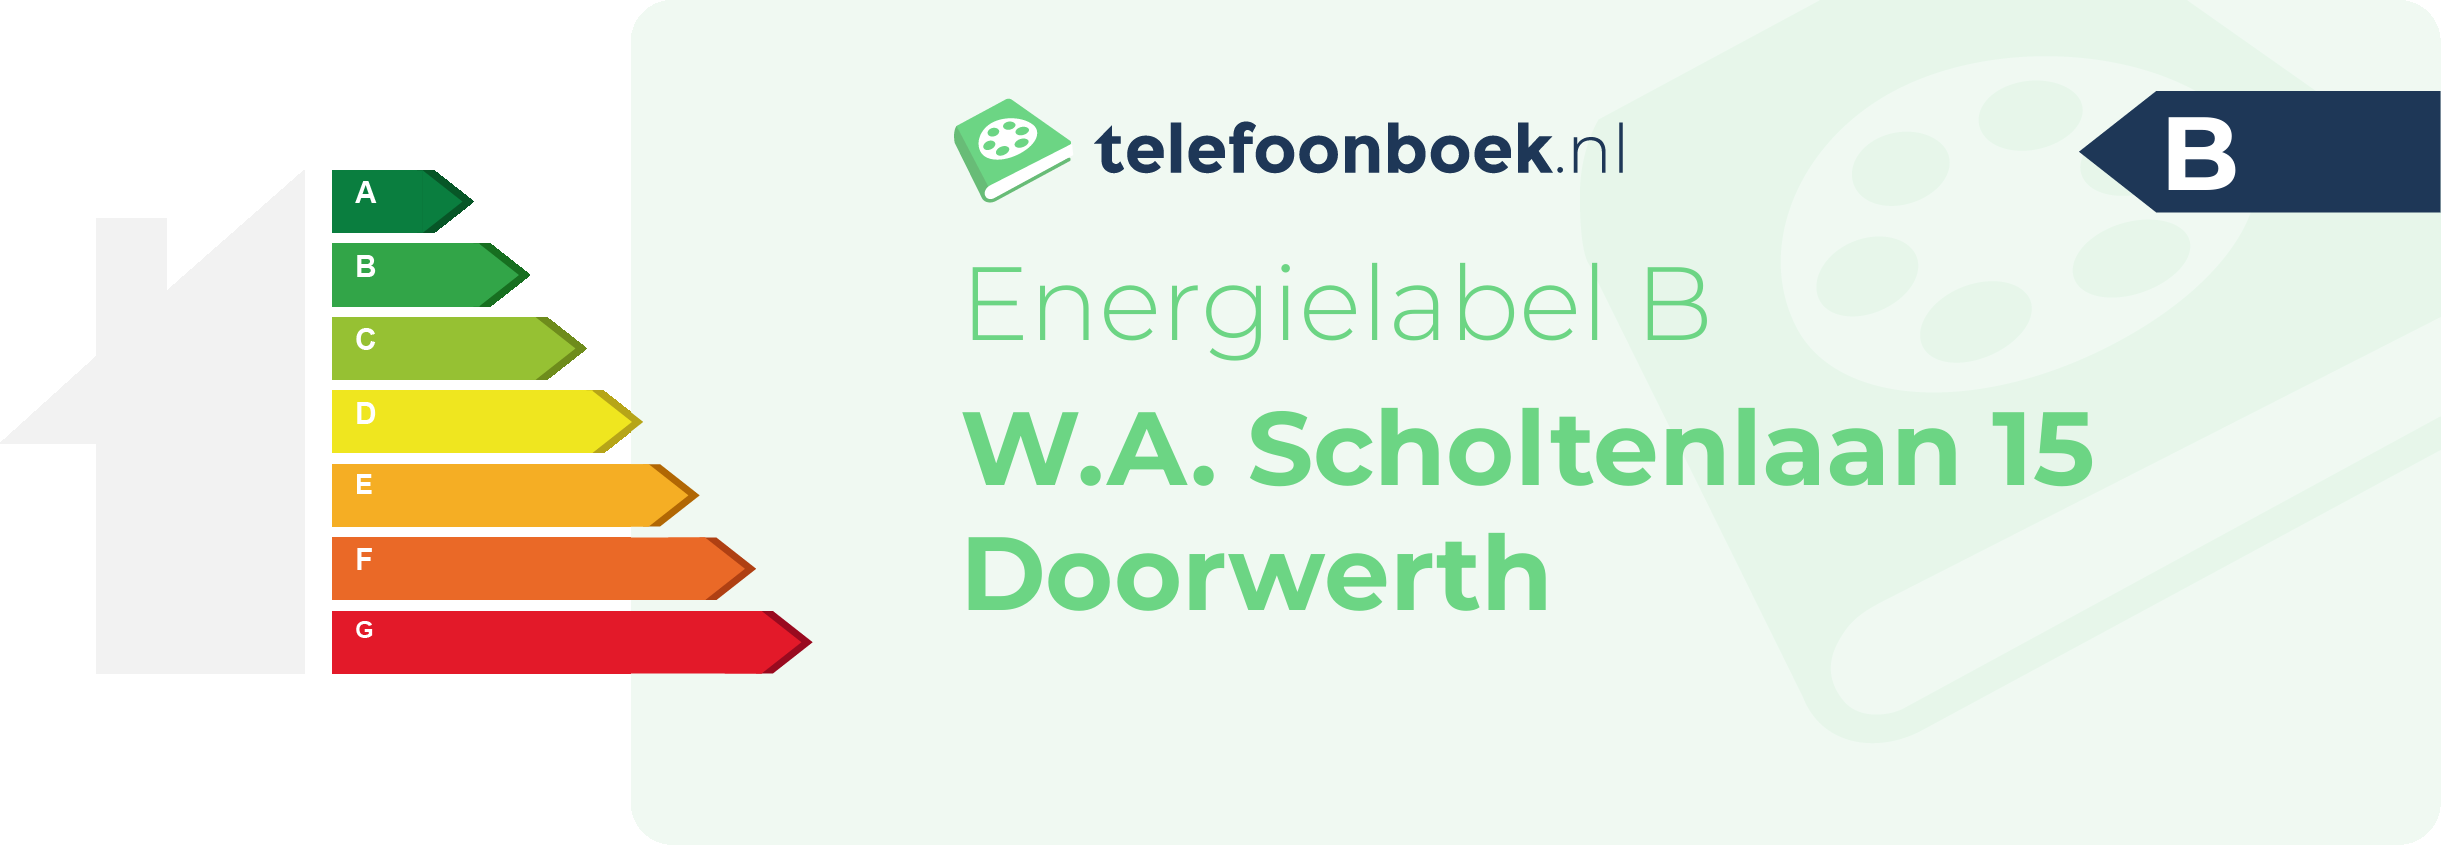 Energielabel W.A. Scholtenlaan 15 Doorwerth